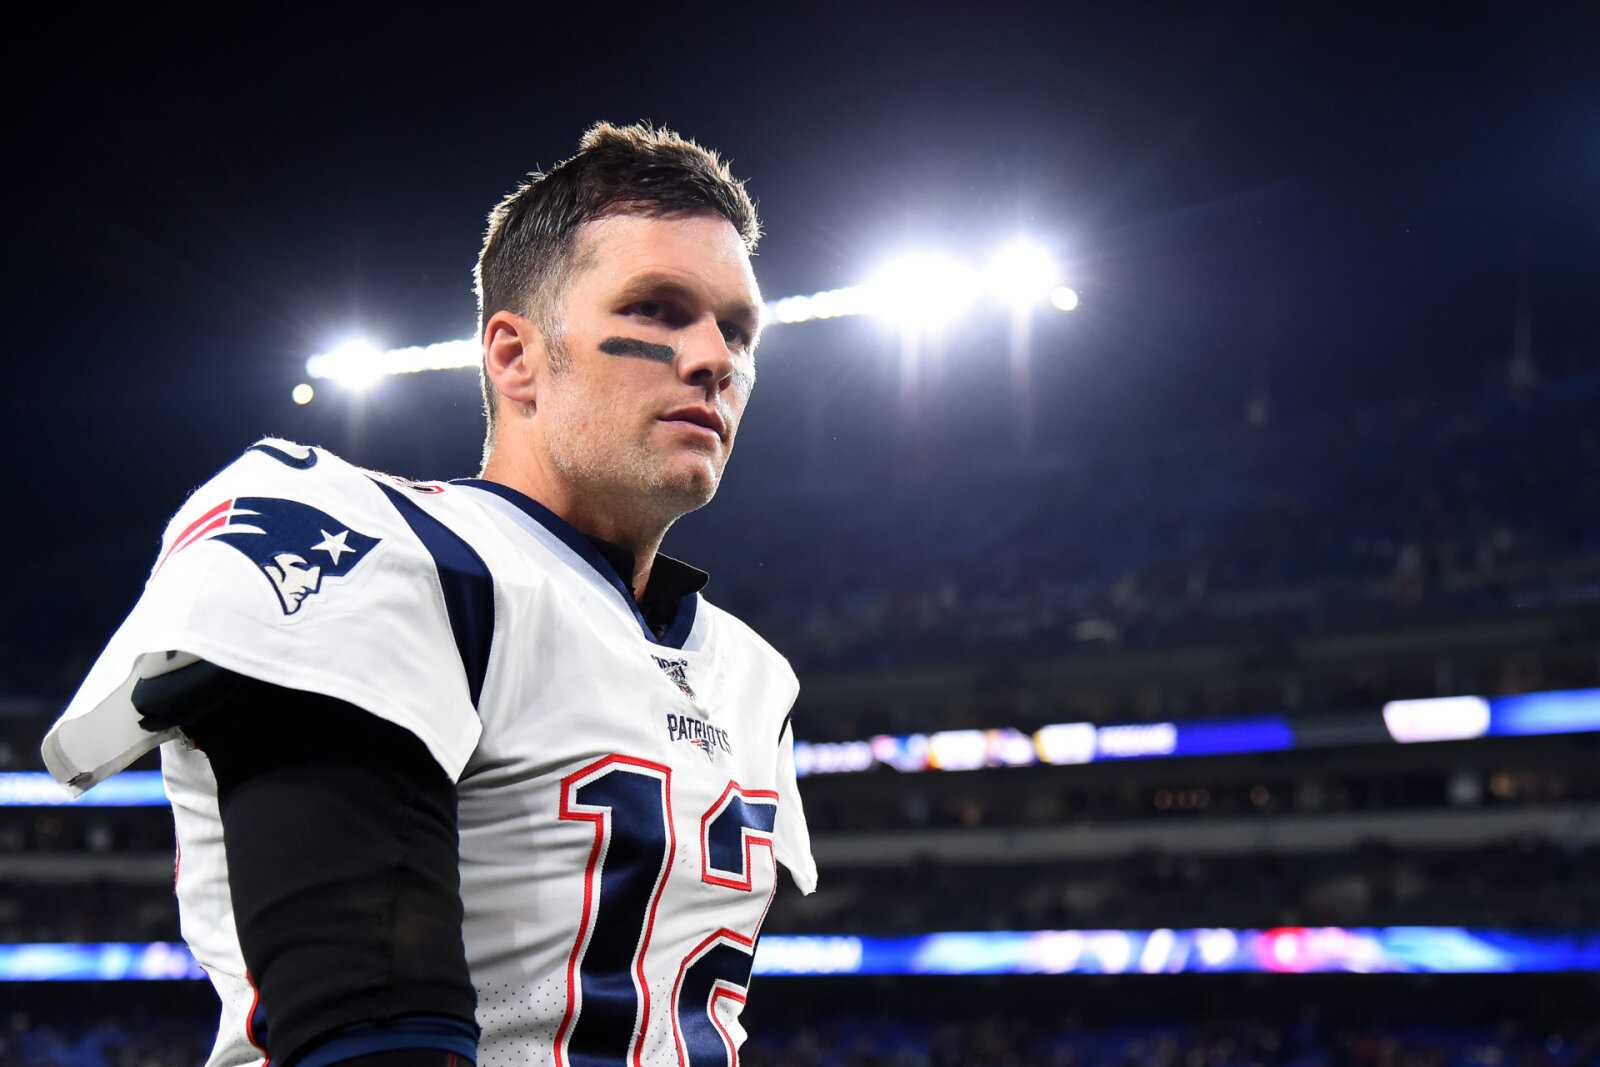 Le joueur des Patriots dit que Tom Brady n'obtiendra pas un retour de conte de fées à son retour à Foxborough